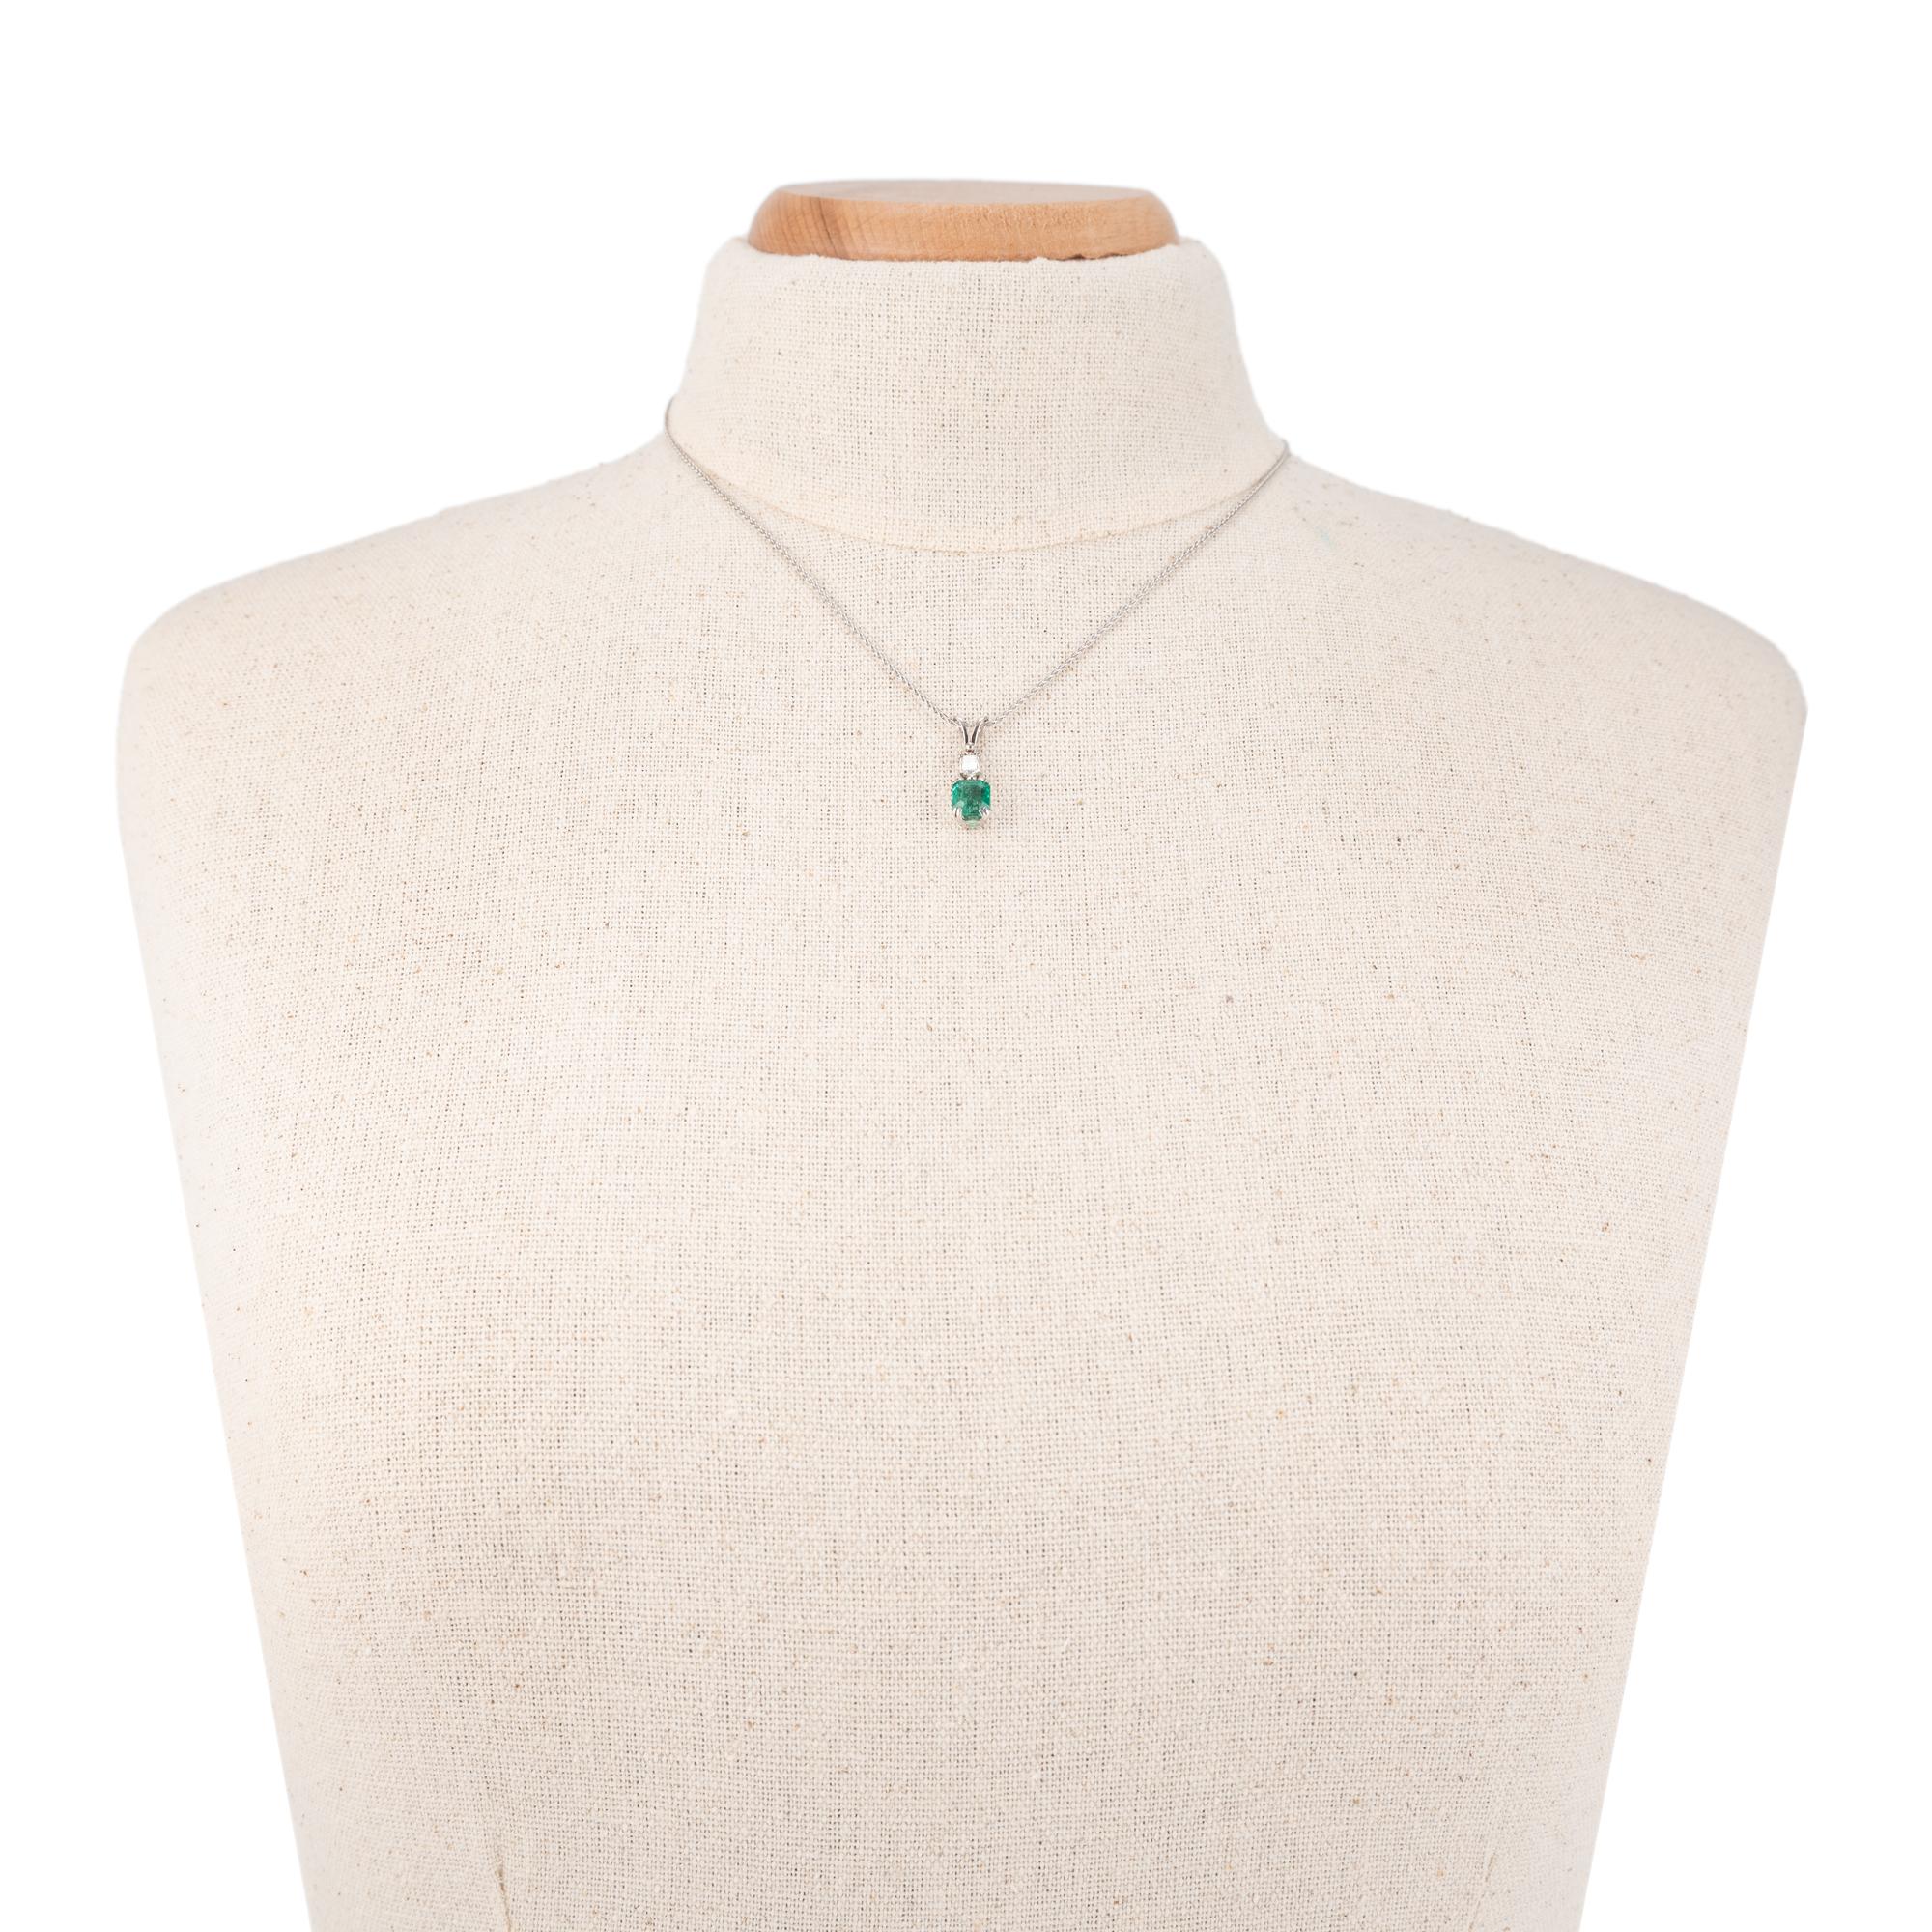 GIA Certified 1.37 Carat Emerald Diamond Platinum Pendant Necklace 1